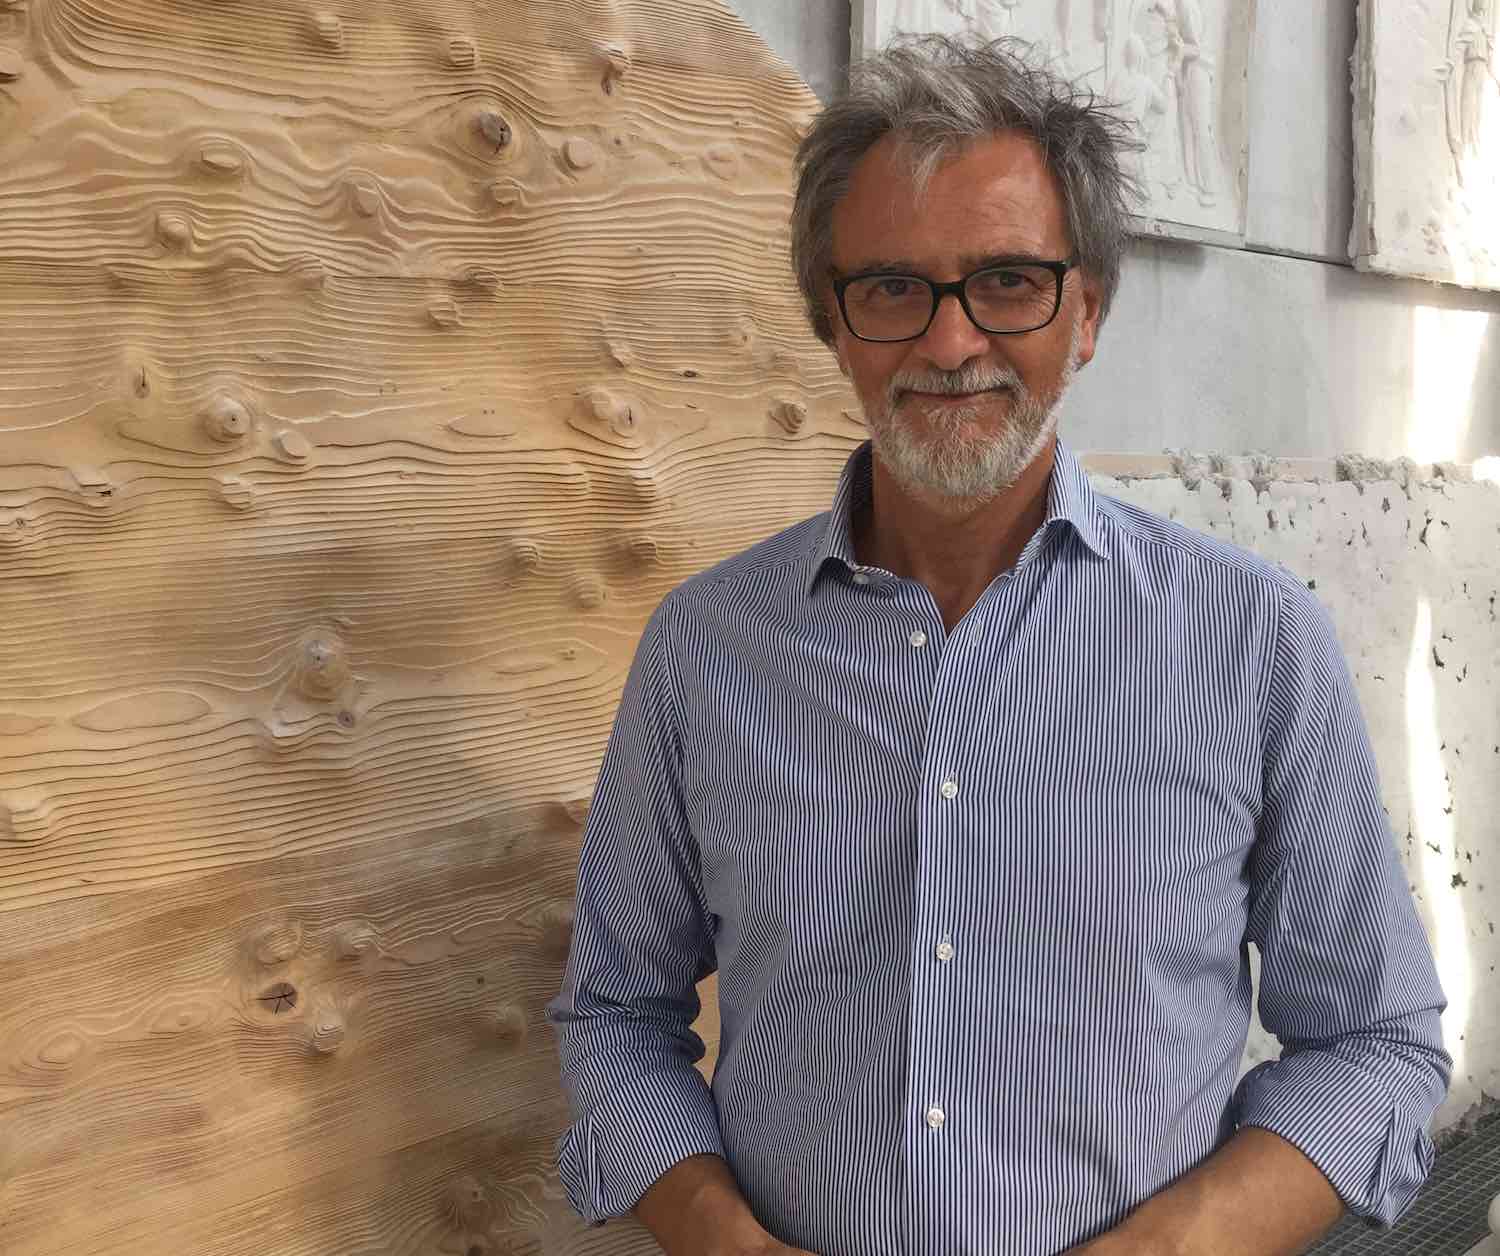 Luciano Massari è uno sculture toscano di fama internazionale, direttore dell'Accademia delle Belle Arti di Carrara e docente di Scultura.